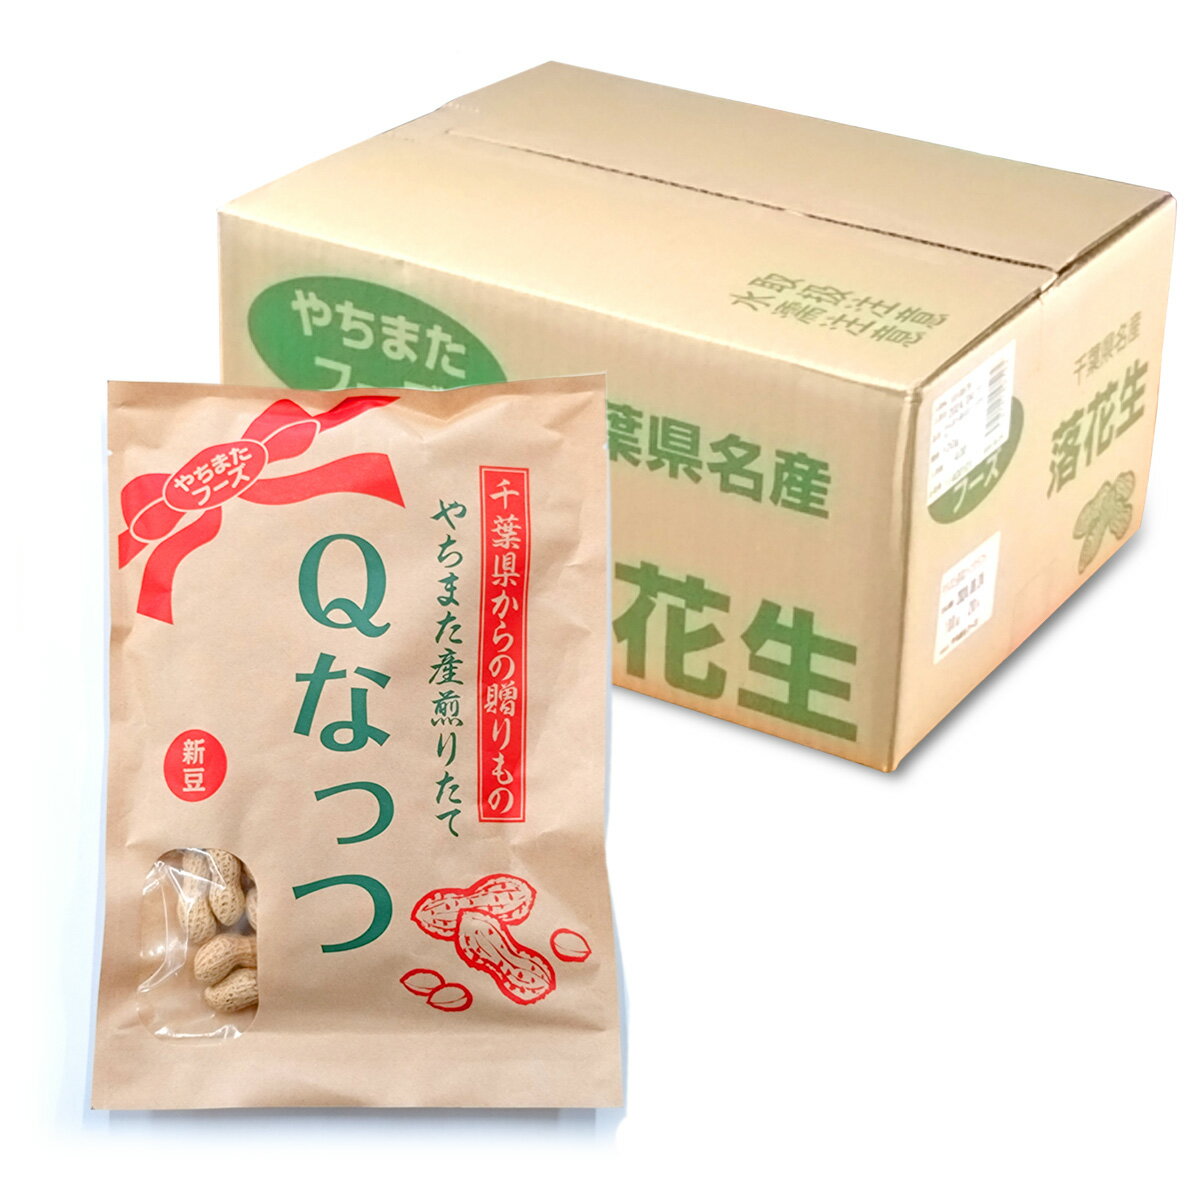 ピーナツ糖 沖縄名産 150g×1個 ピーナッツ黒糖 とも言われております。